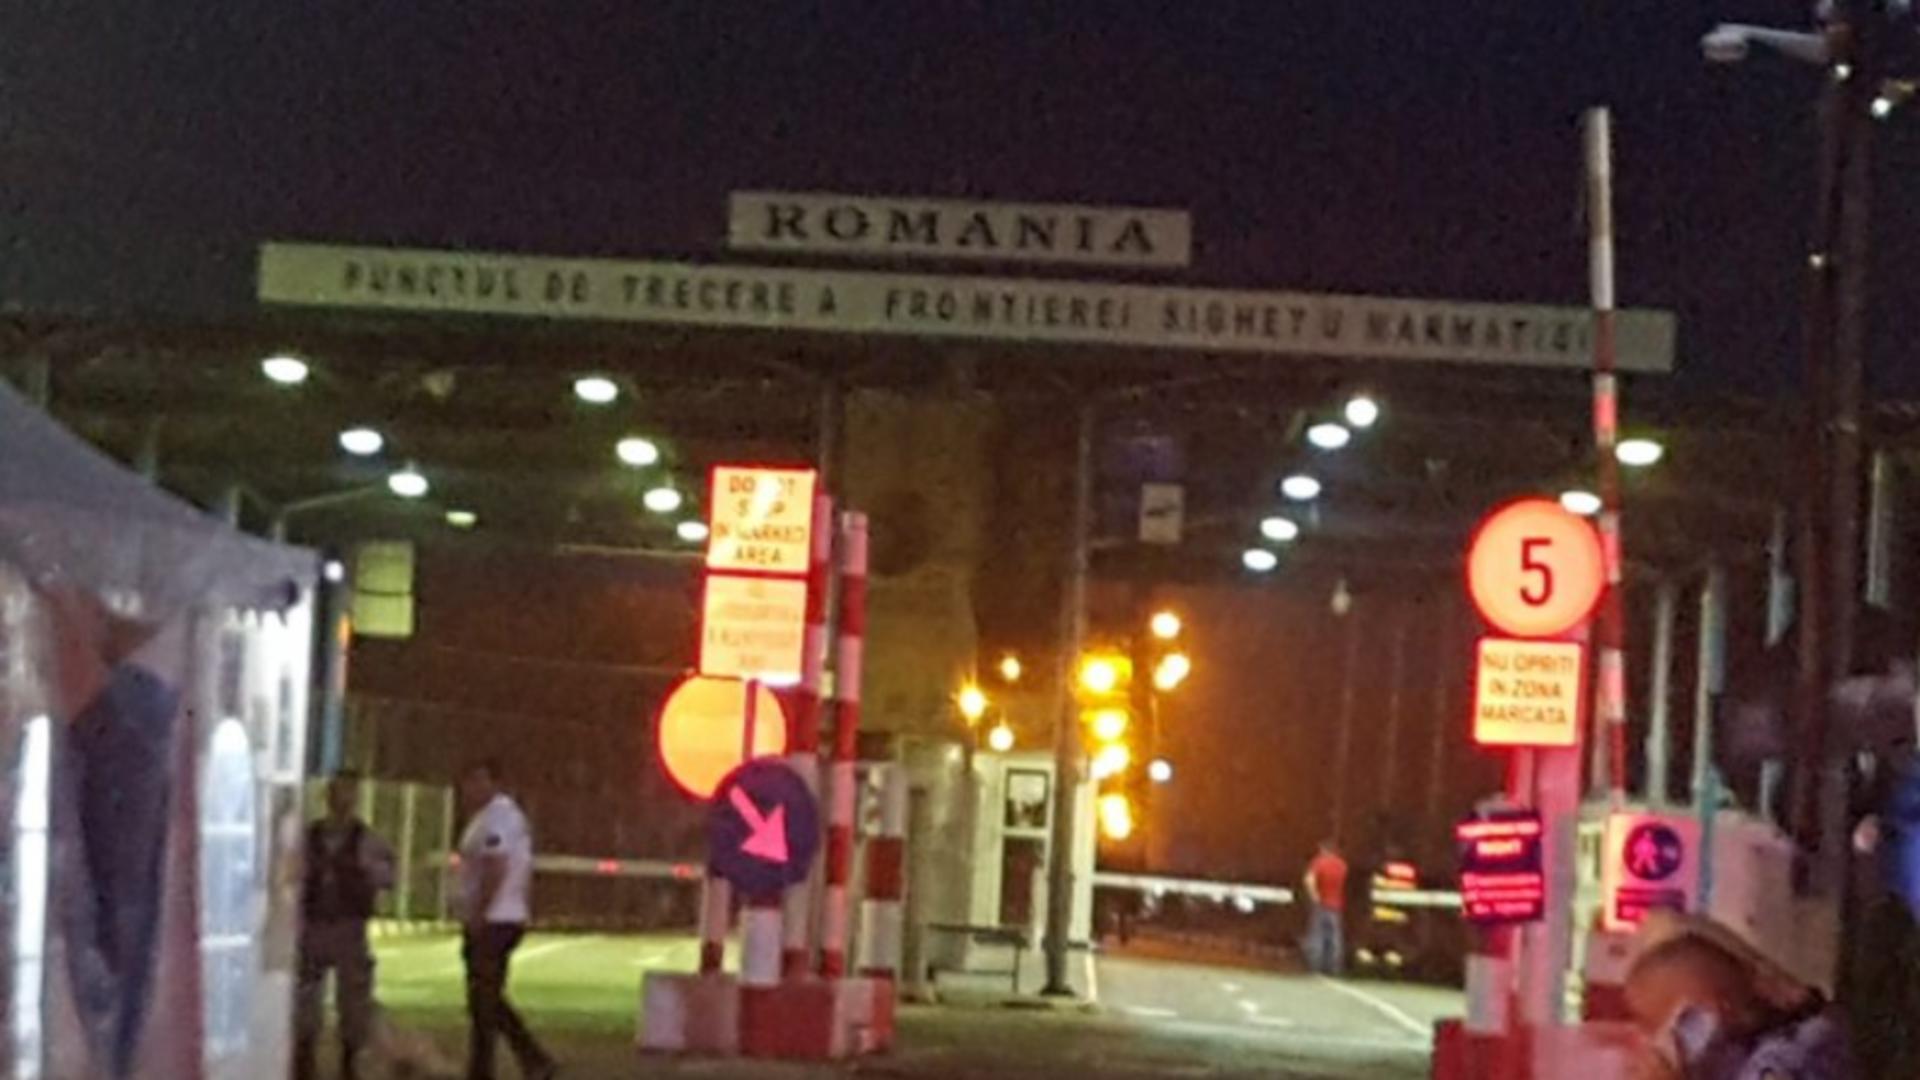 ALERTĂ la granița cu Ucraina! Amenințarea cu bombă la podul istoric de la Sighetu Marmației - FALSĂ